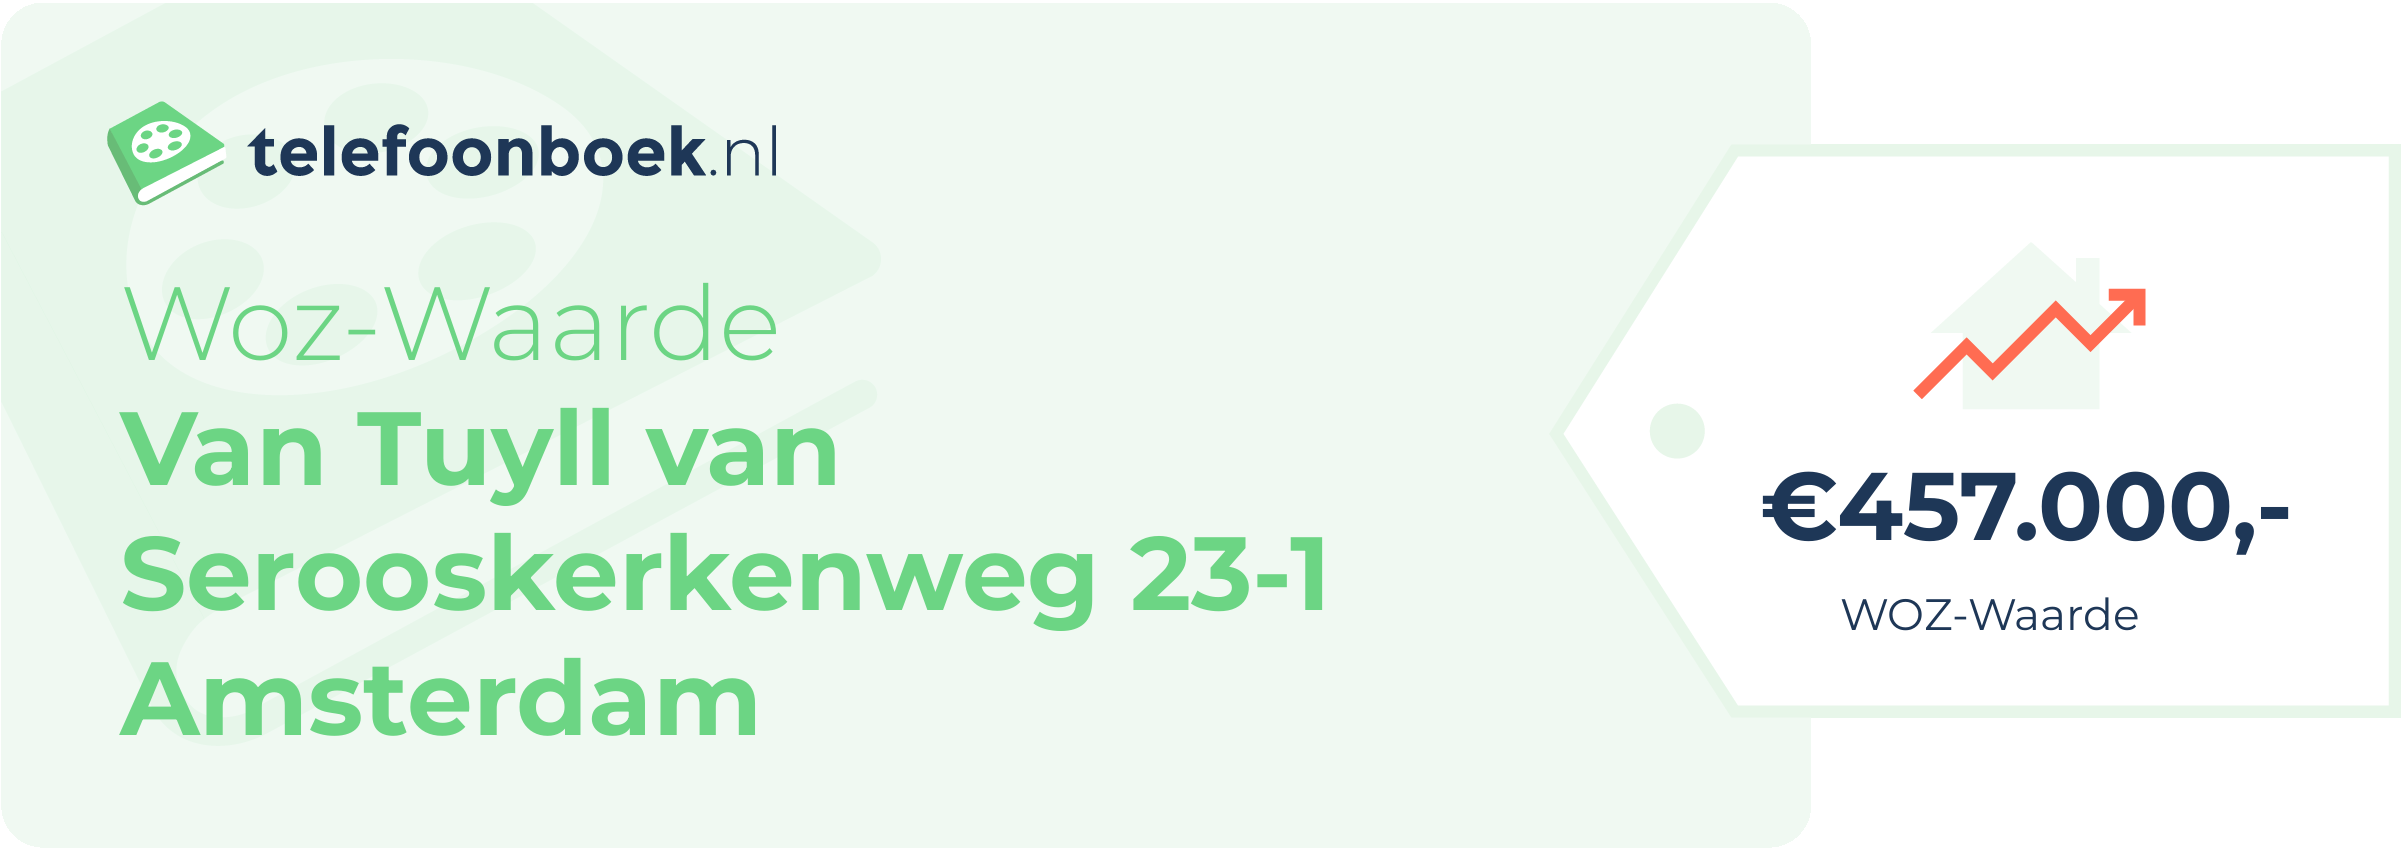 WOZ-waarde Van Tuyll Van Serooskerkenweg 23-1 Amsterdam